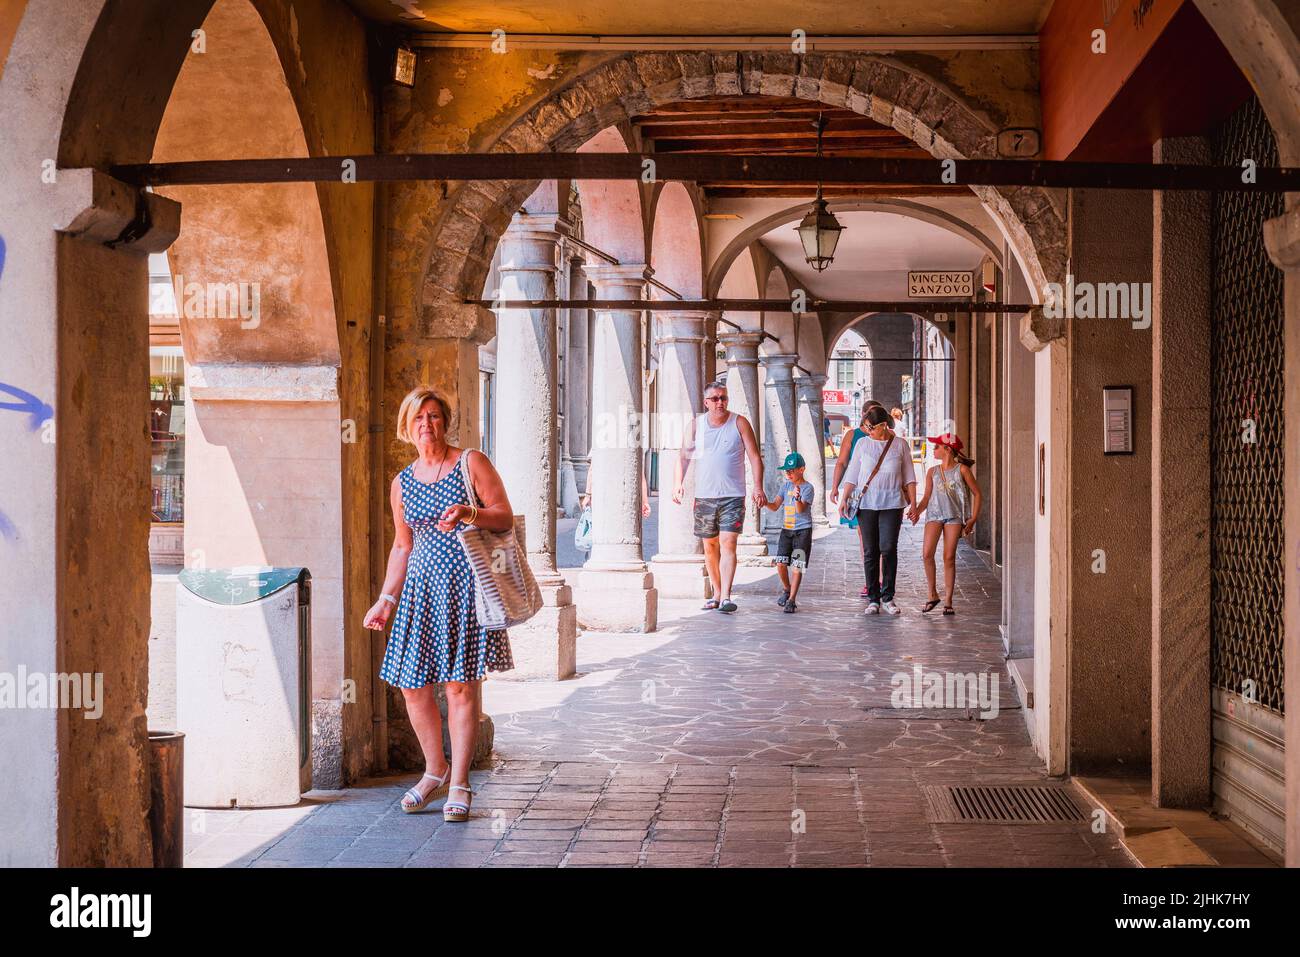 Arcades in the Market square - Piazza Mercato. Belluno, Veneto, Italy, Europe. Stock Photo